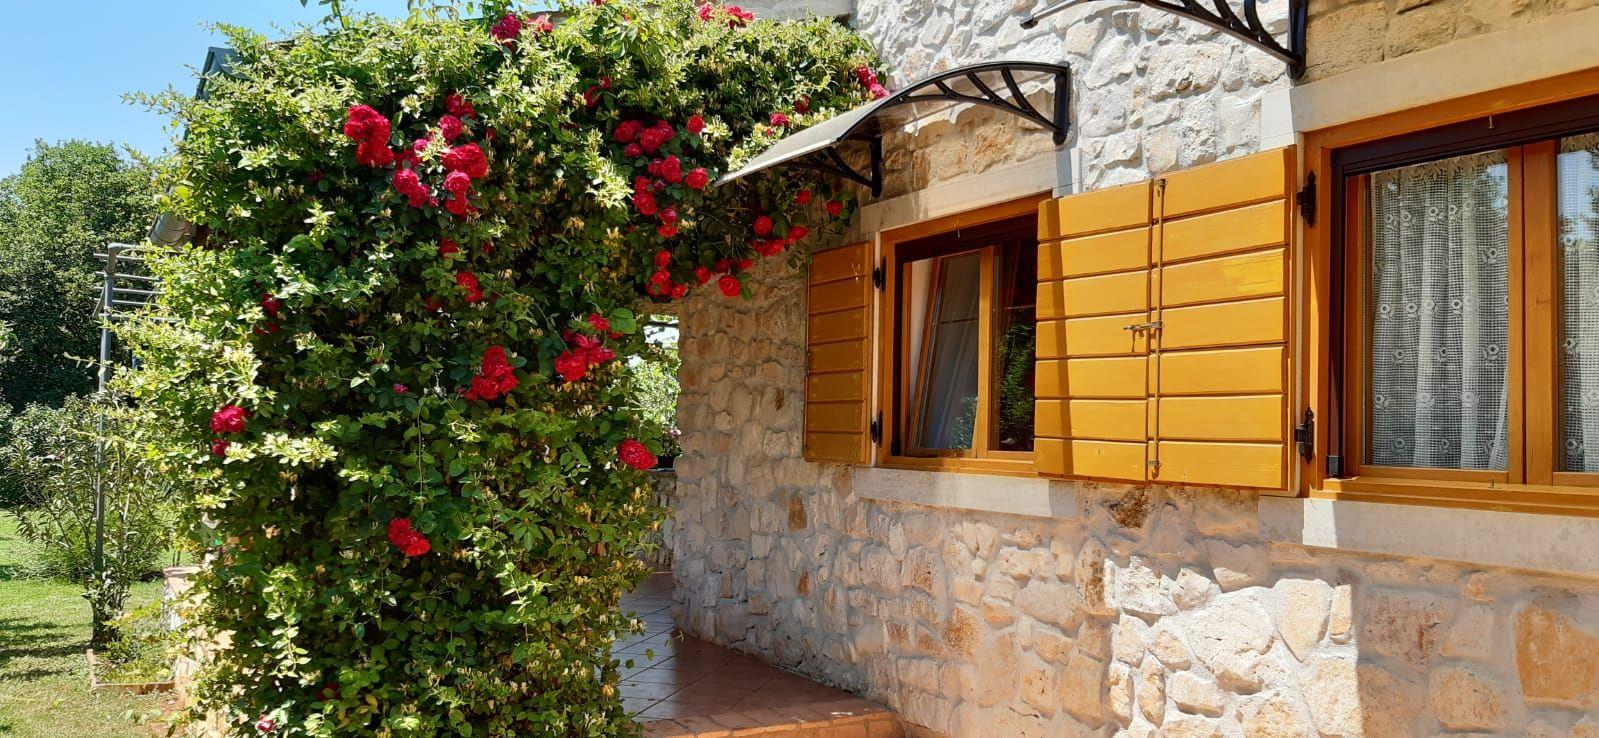 Ferienhaus mit schön angelegtem Garten mit Ol Ferienhaus in Istrien